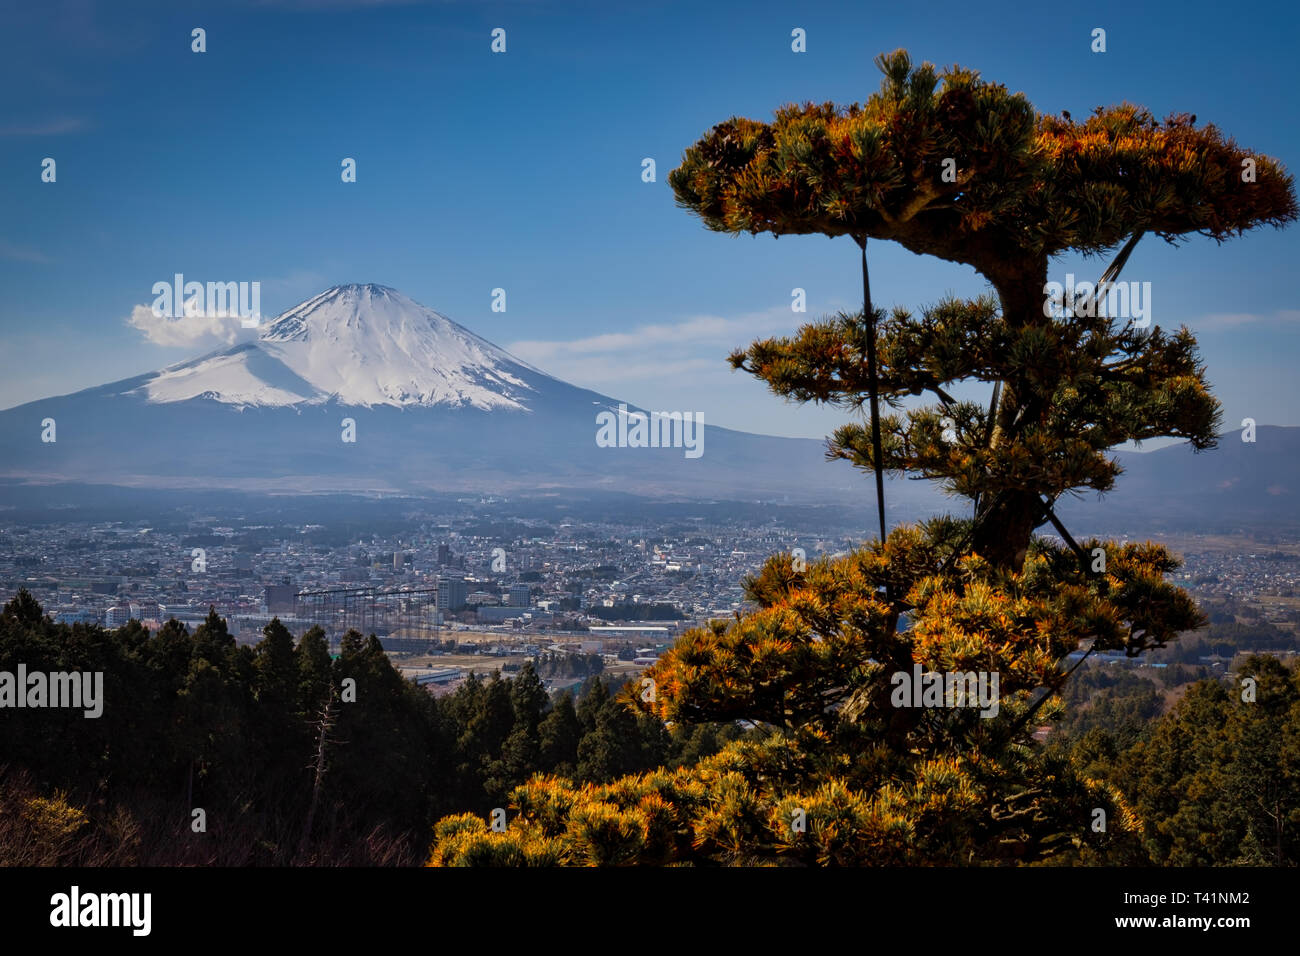 La città di Gotemba, Giappone con il Monte Fuji in background. Foto Stock